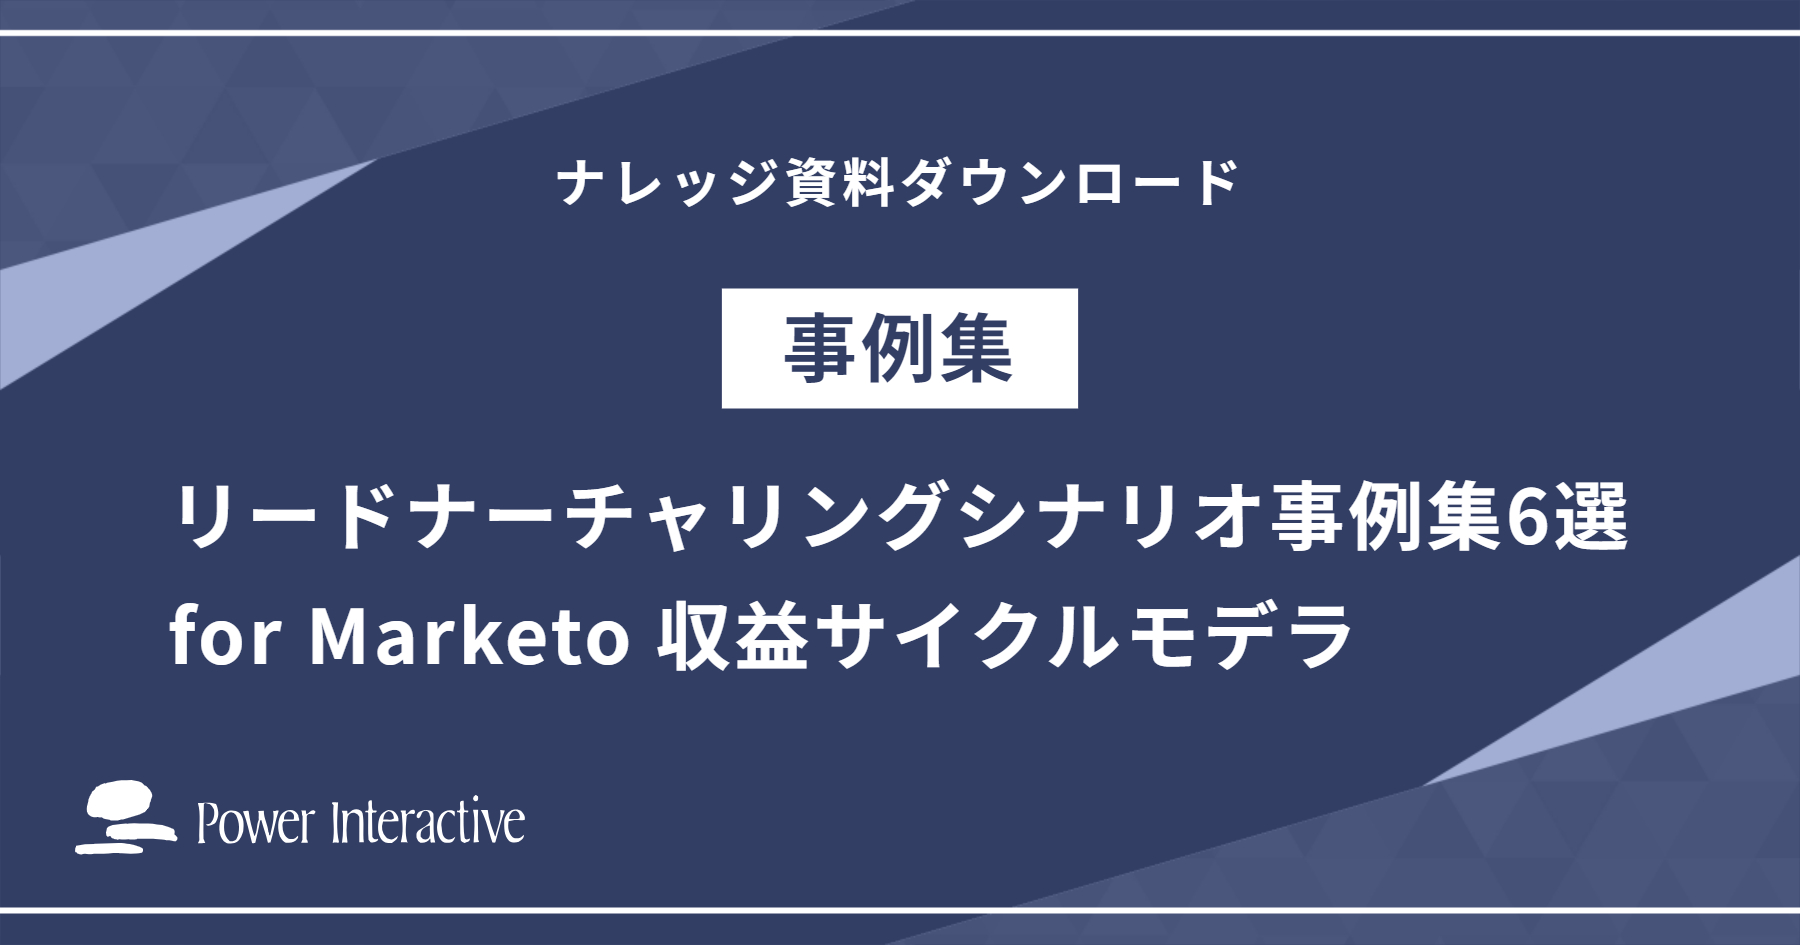 リードナーチャリングシナリオ事例集6選 for Marketo 収益サイクルモデラ